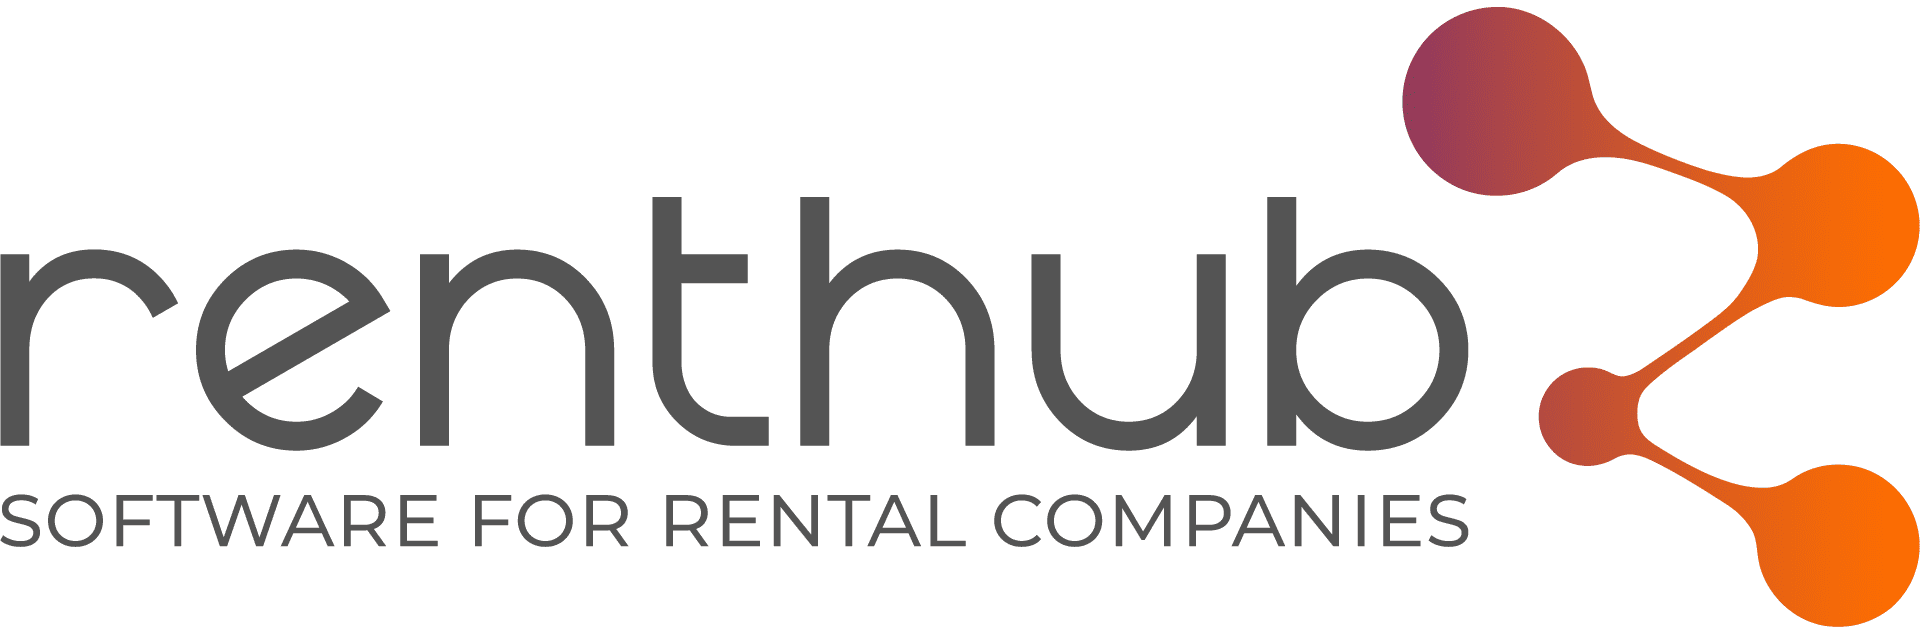 RentHub | Software de gestión para alquiler de herramientas y coches